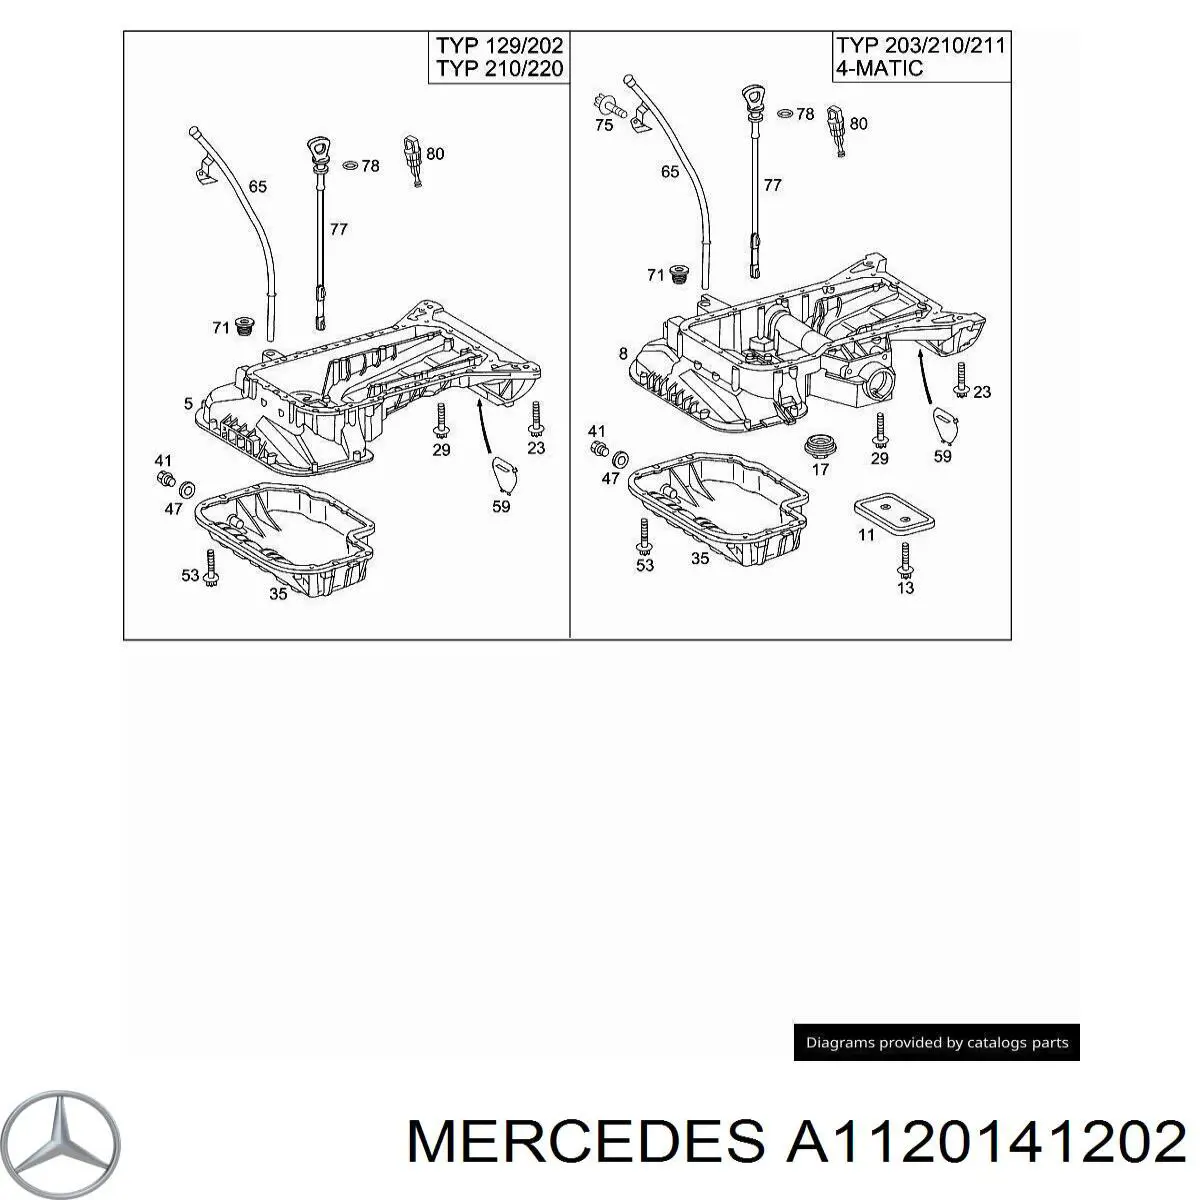 1120141202 Mercedes поддон масляный картера двигателя, верхняя часть